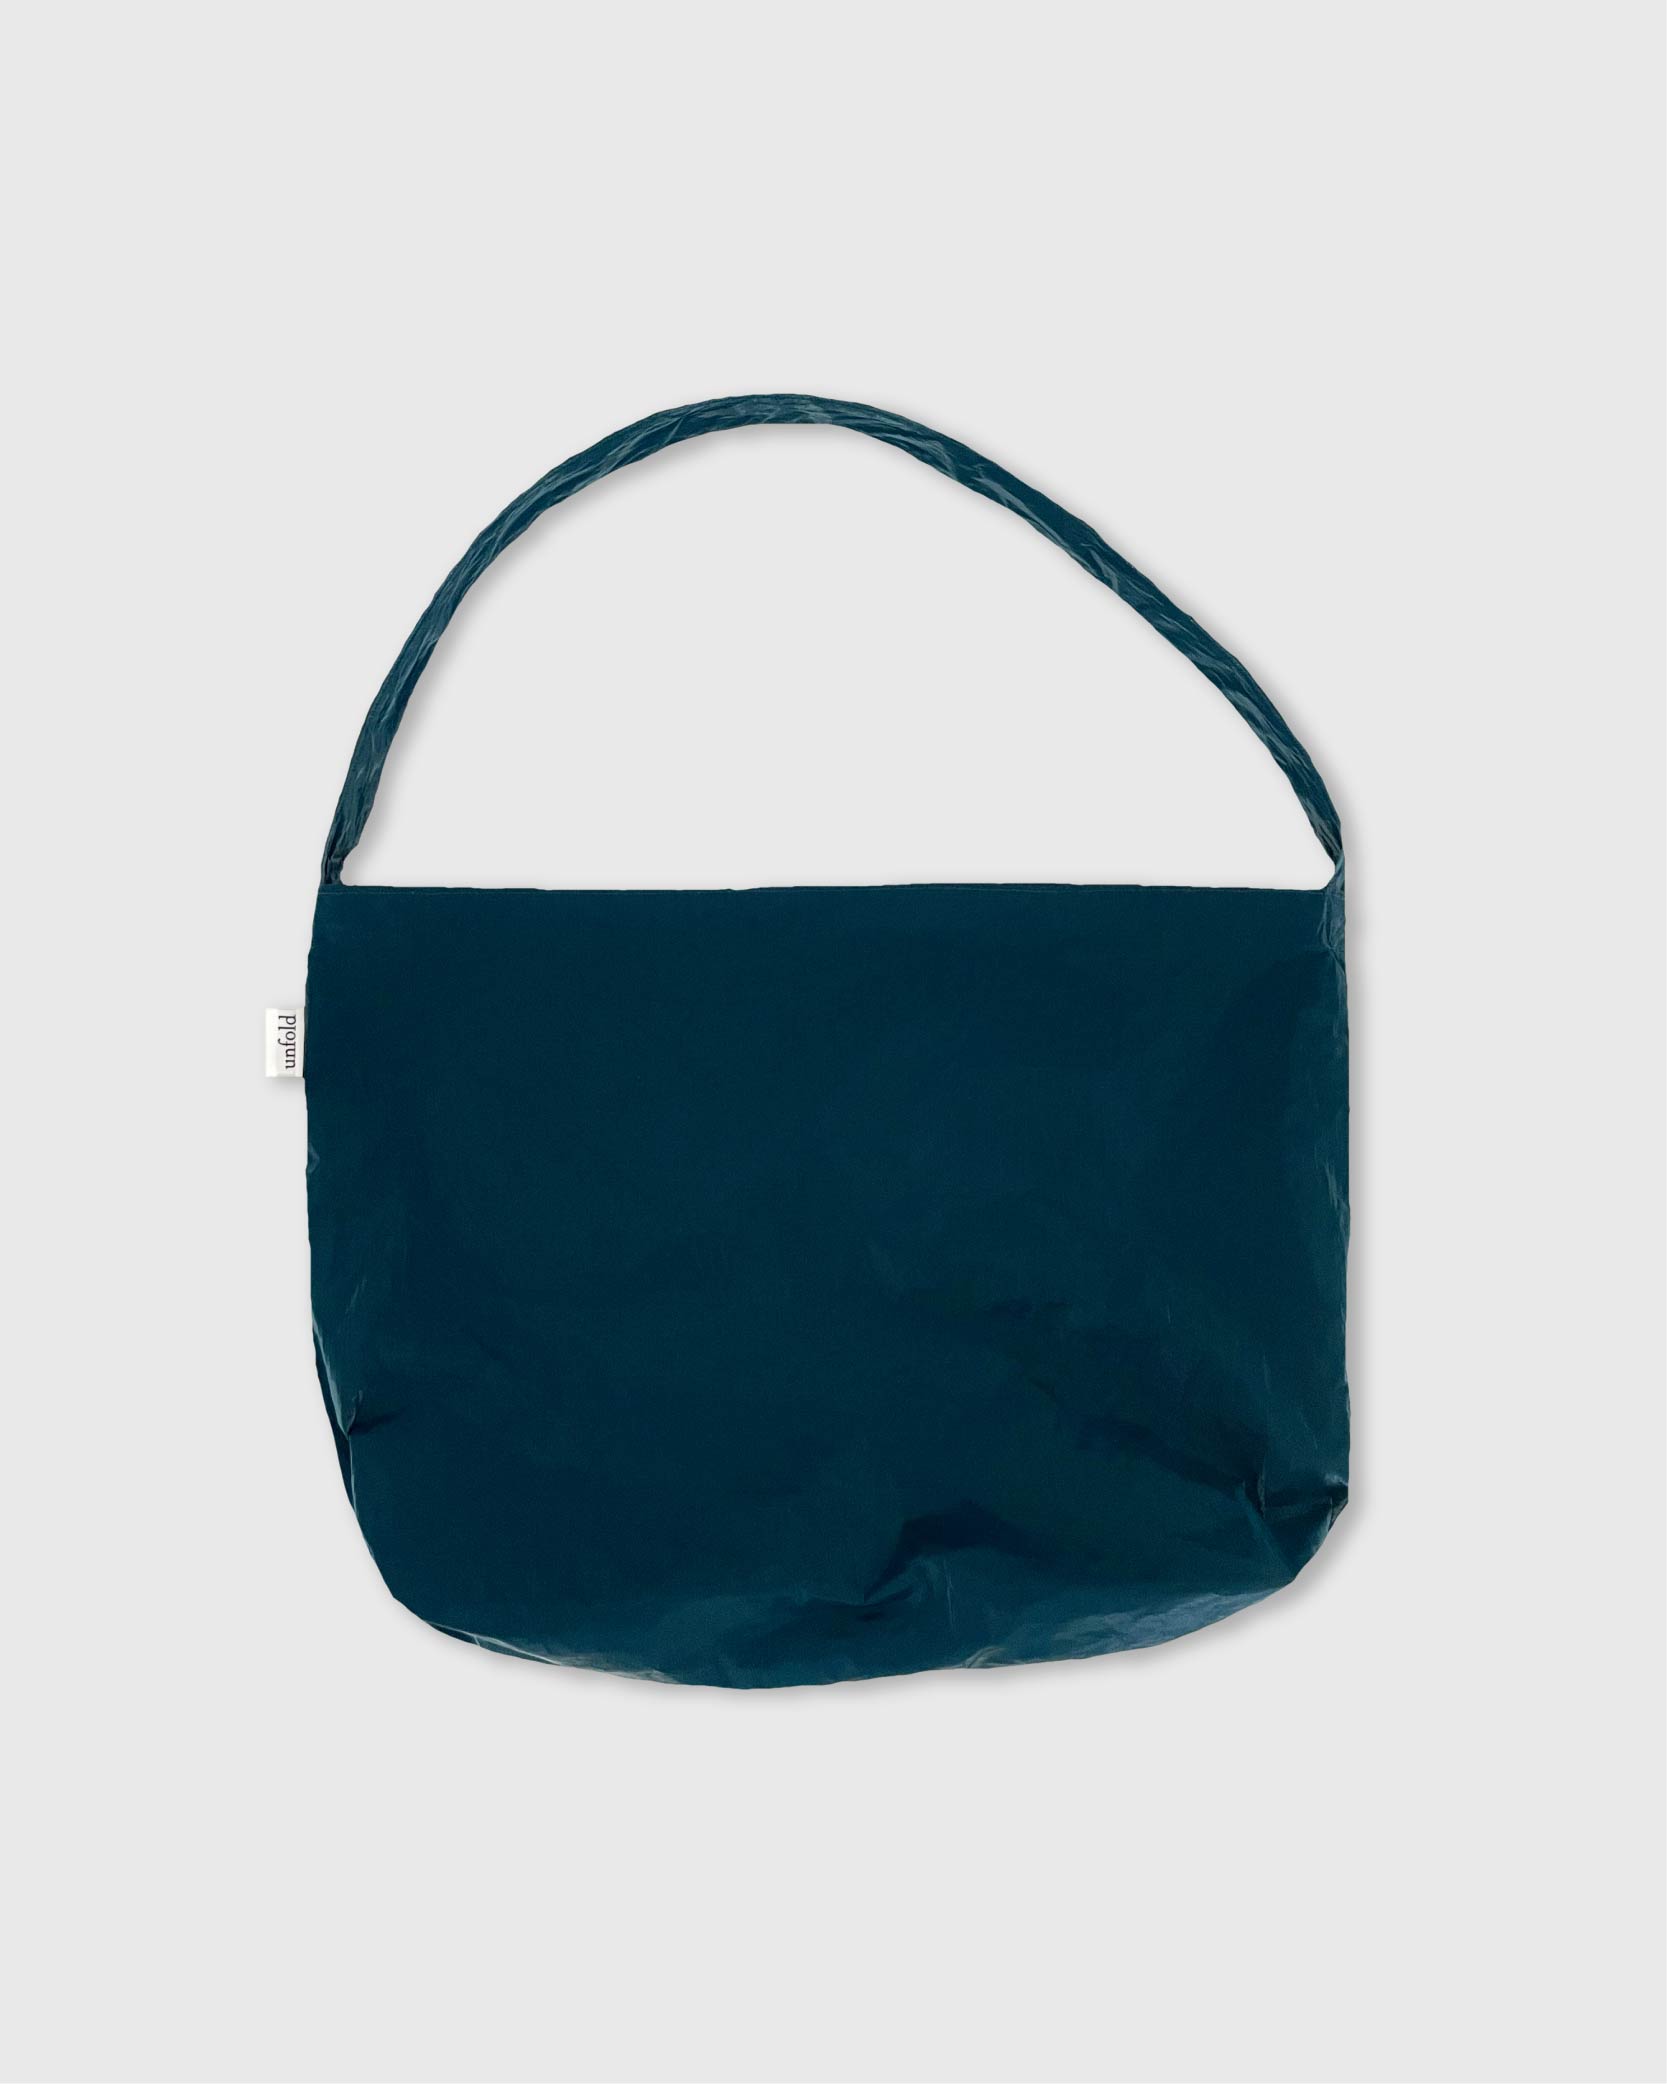 언폴드,unfold,에코백,파우치,천가방,코스터,백팩,스크런치Glossy shoulder bag (turquoise)